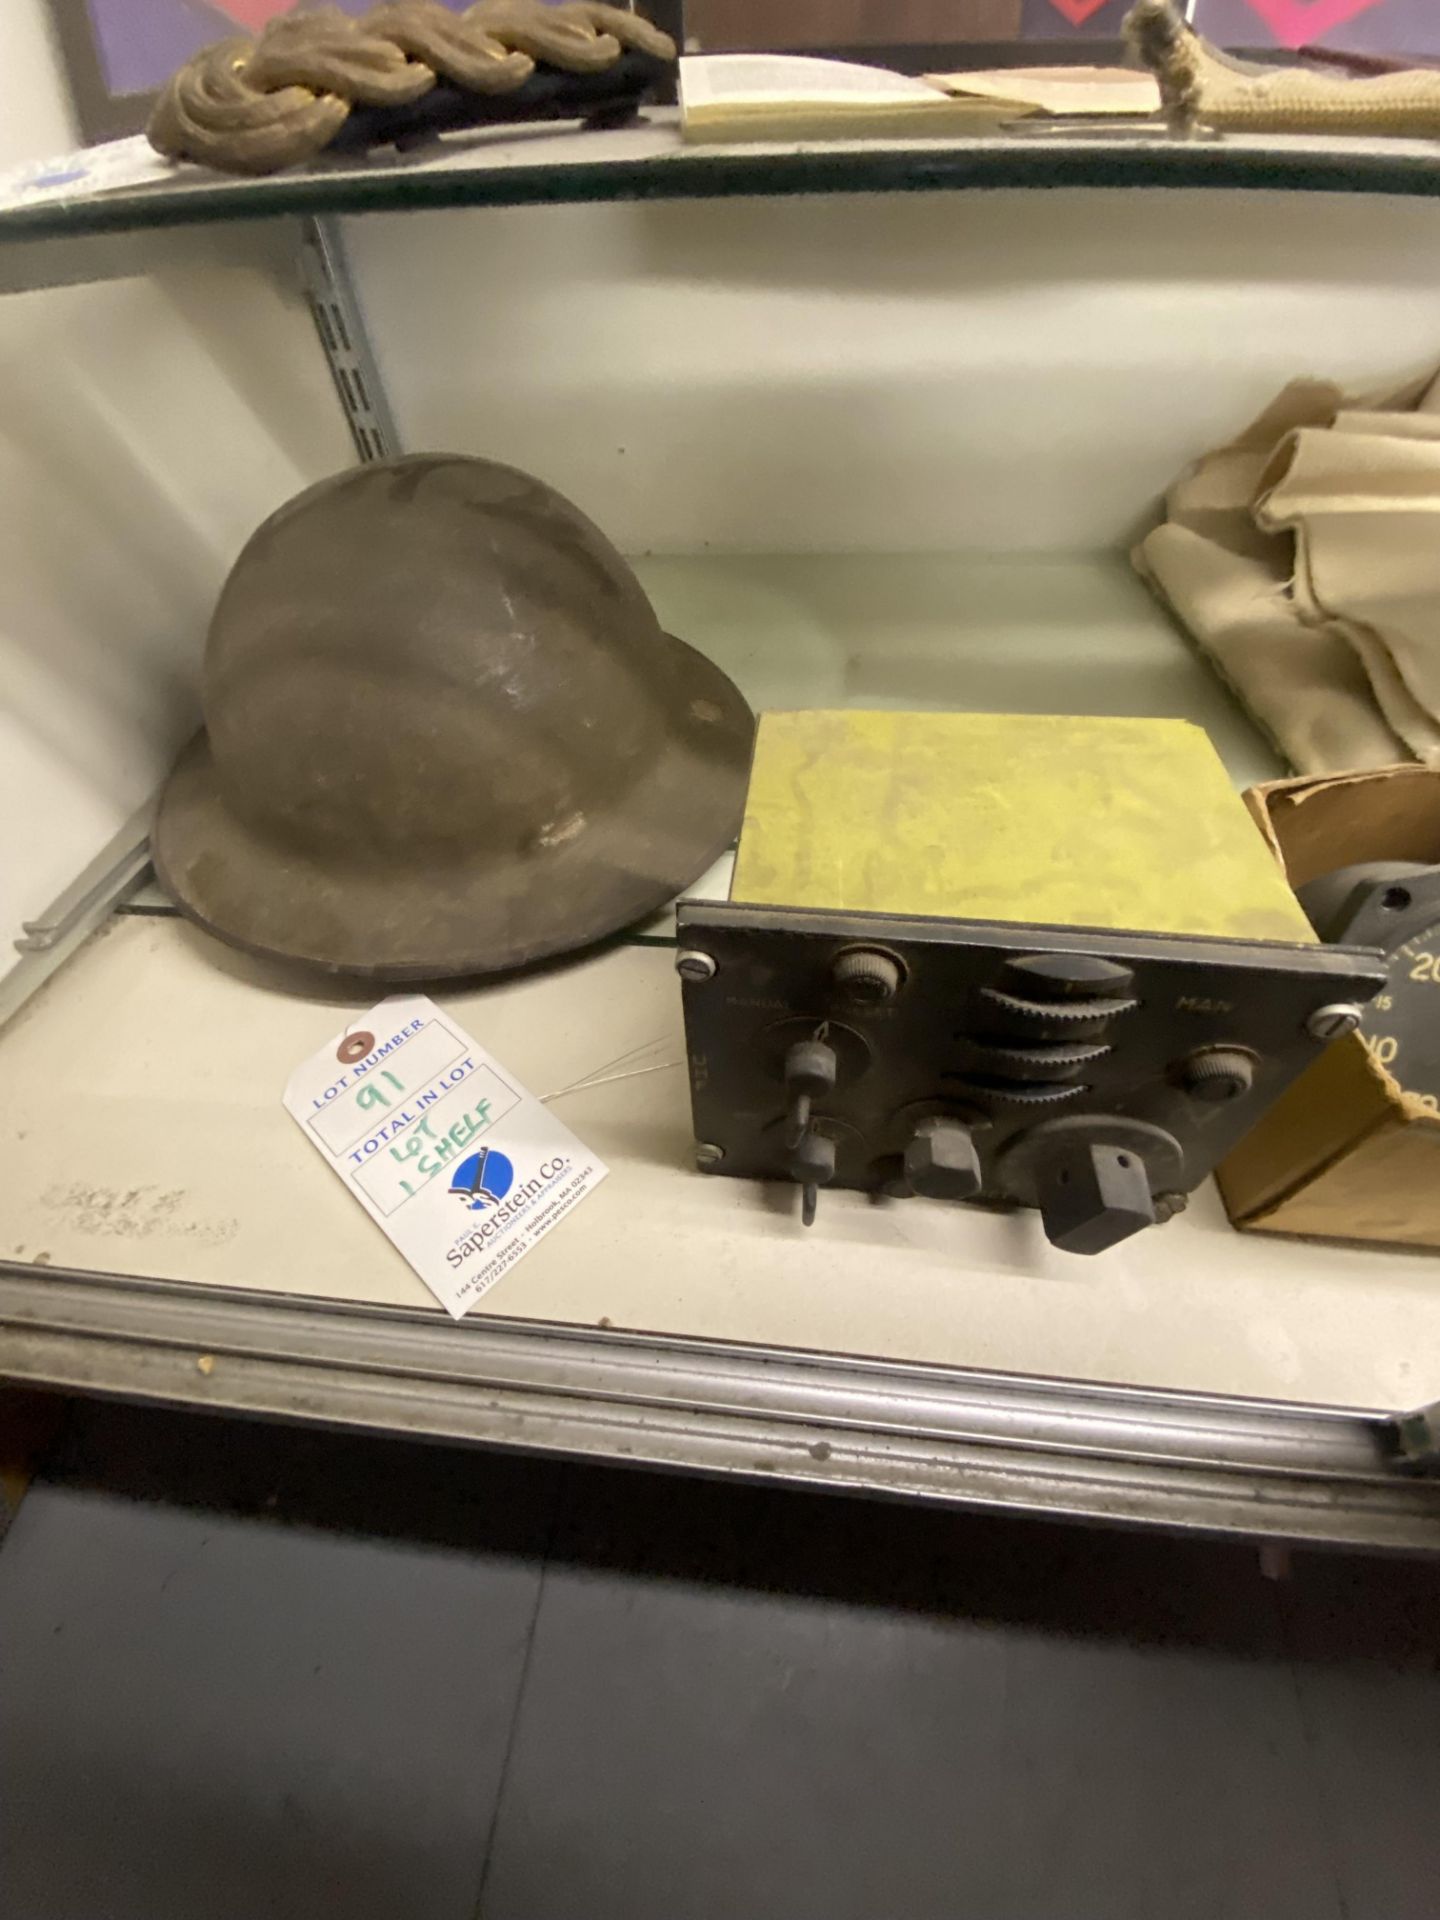 {LOT} On 1 Shelf w/(2) Asst. Helmets, Old Navy Blanket, And (2) Asst. Gauges - Image 2 of 6